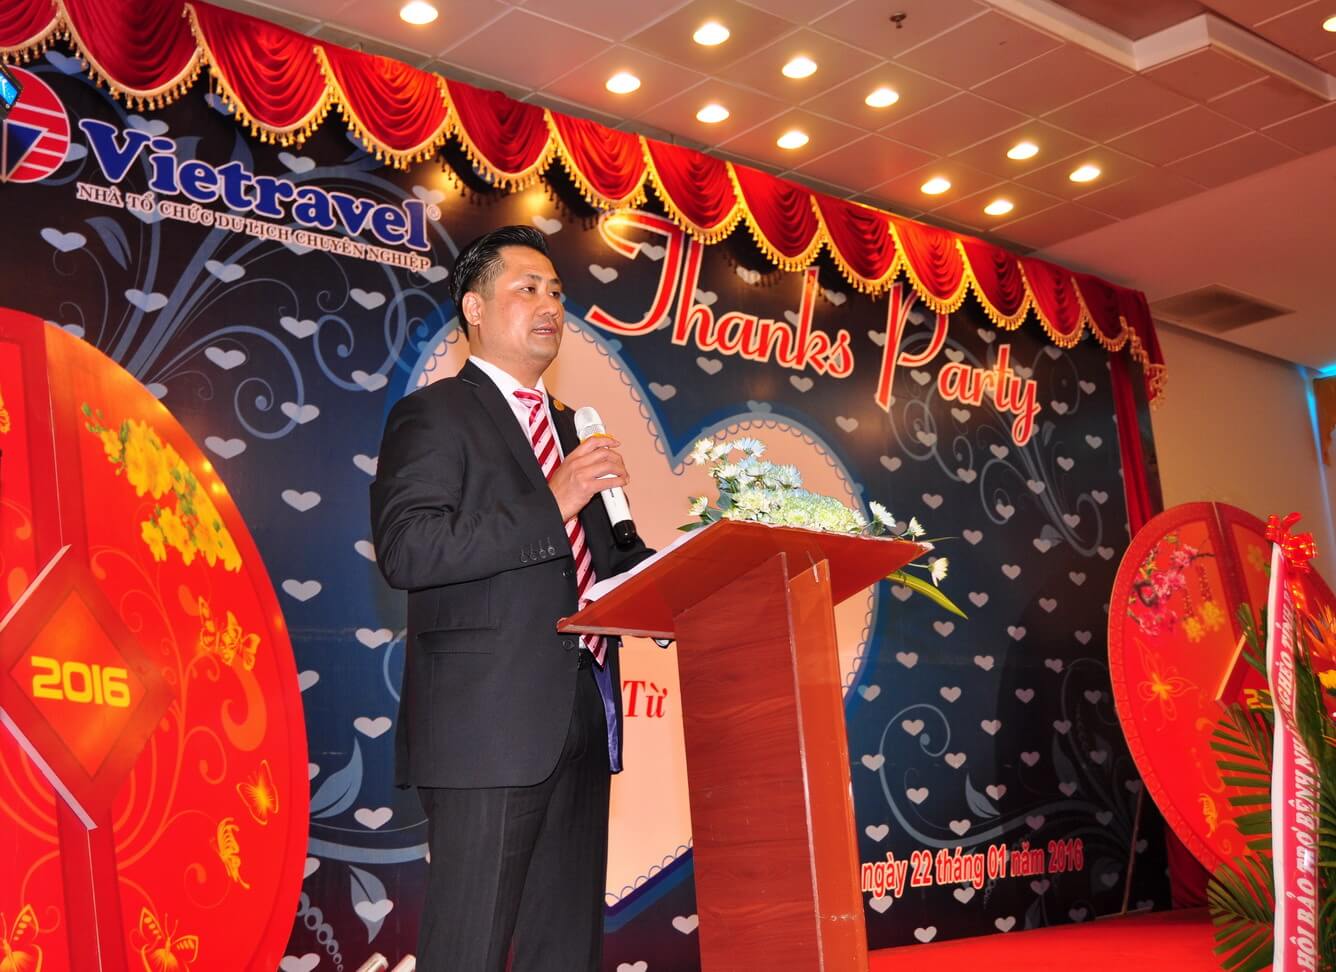 Vietravel tổ chức Hội Nghị Khách Hàng nhân dịp đón xuân Bính Thân 2016 tại Bình Định